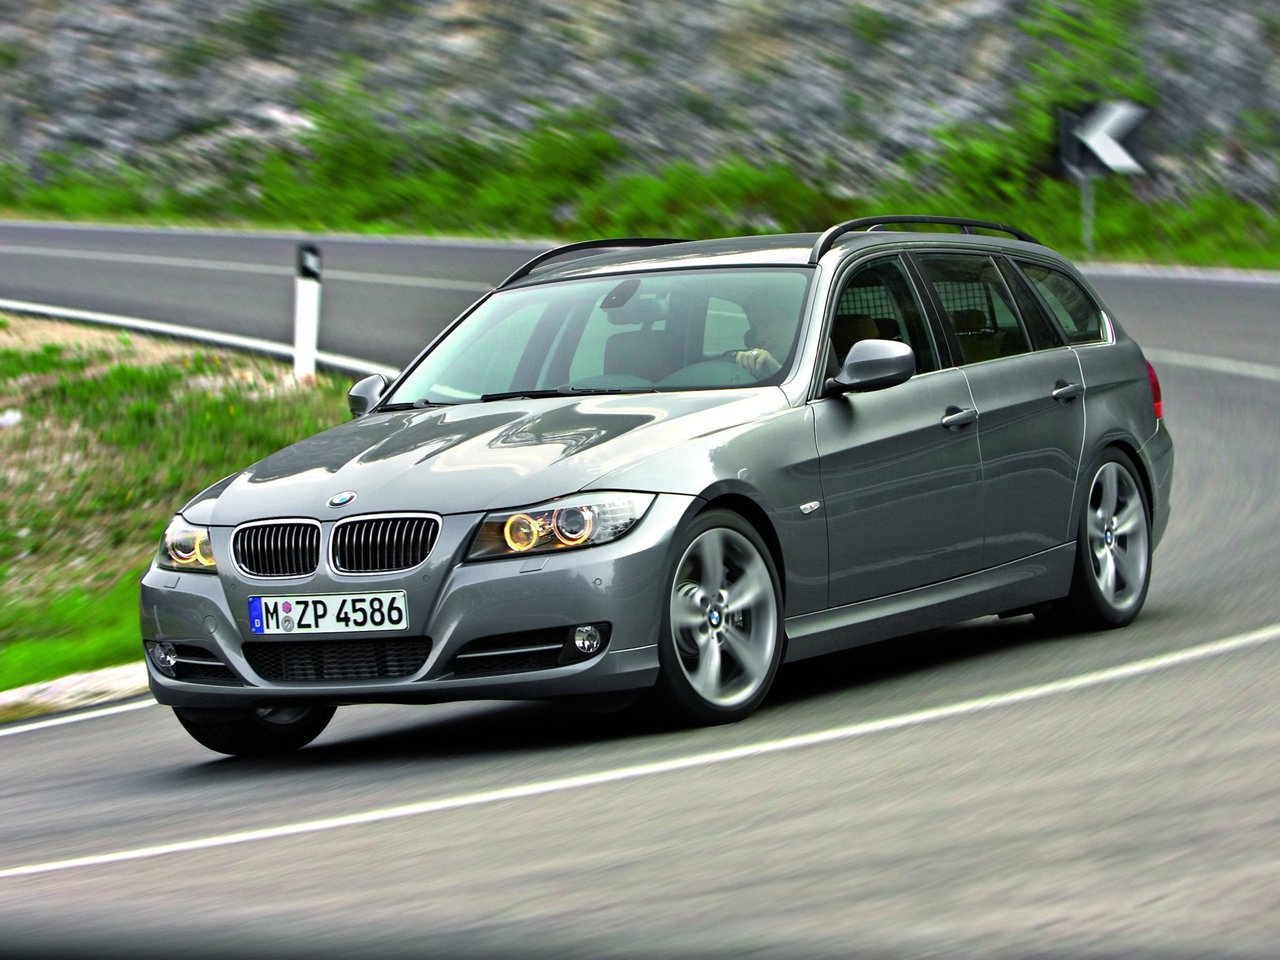 Расход газа девяти комплектаций универсала пять дверей BMW 3 серия. Разница стоимости заправки газом и бензином. Автономный пробег до и после установки ГБО.